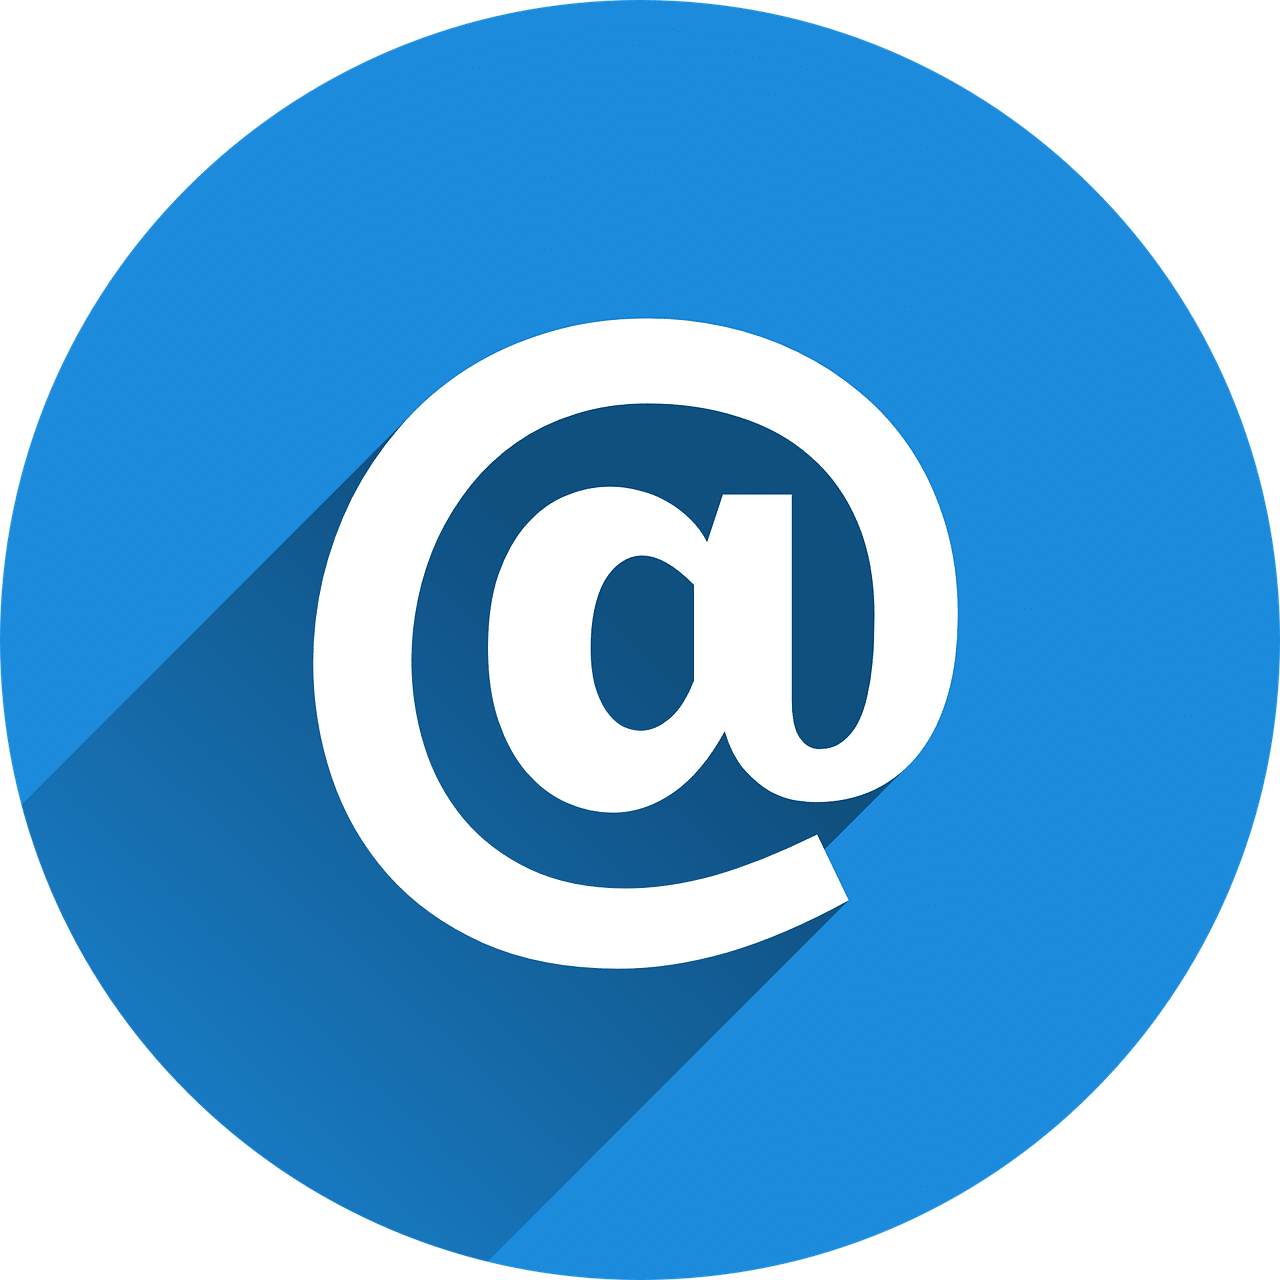 email marketing - få mere ud af dine nyhedsbreve